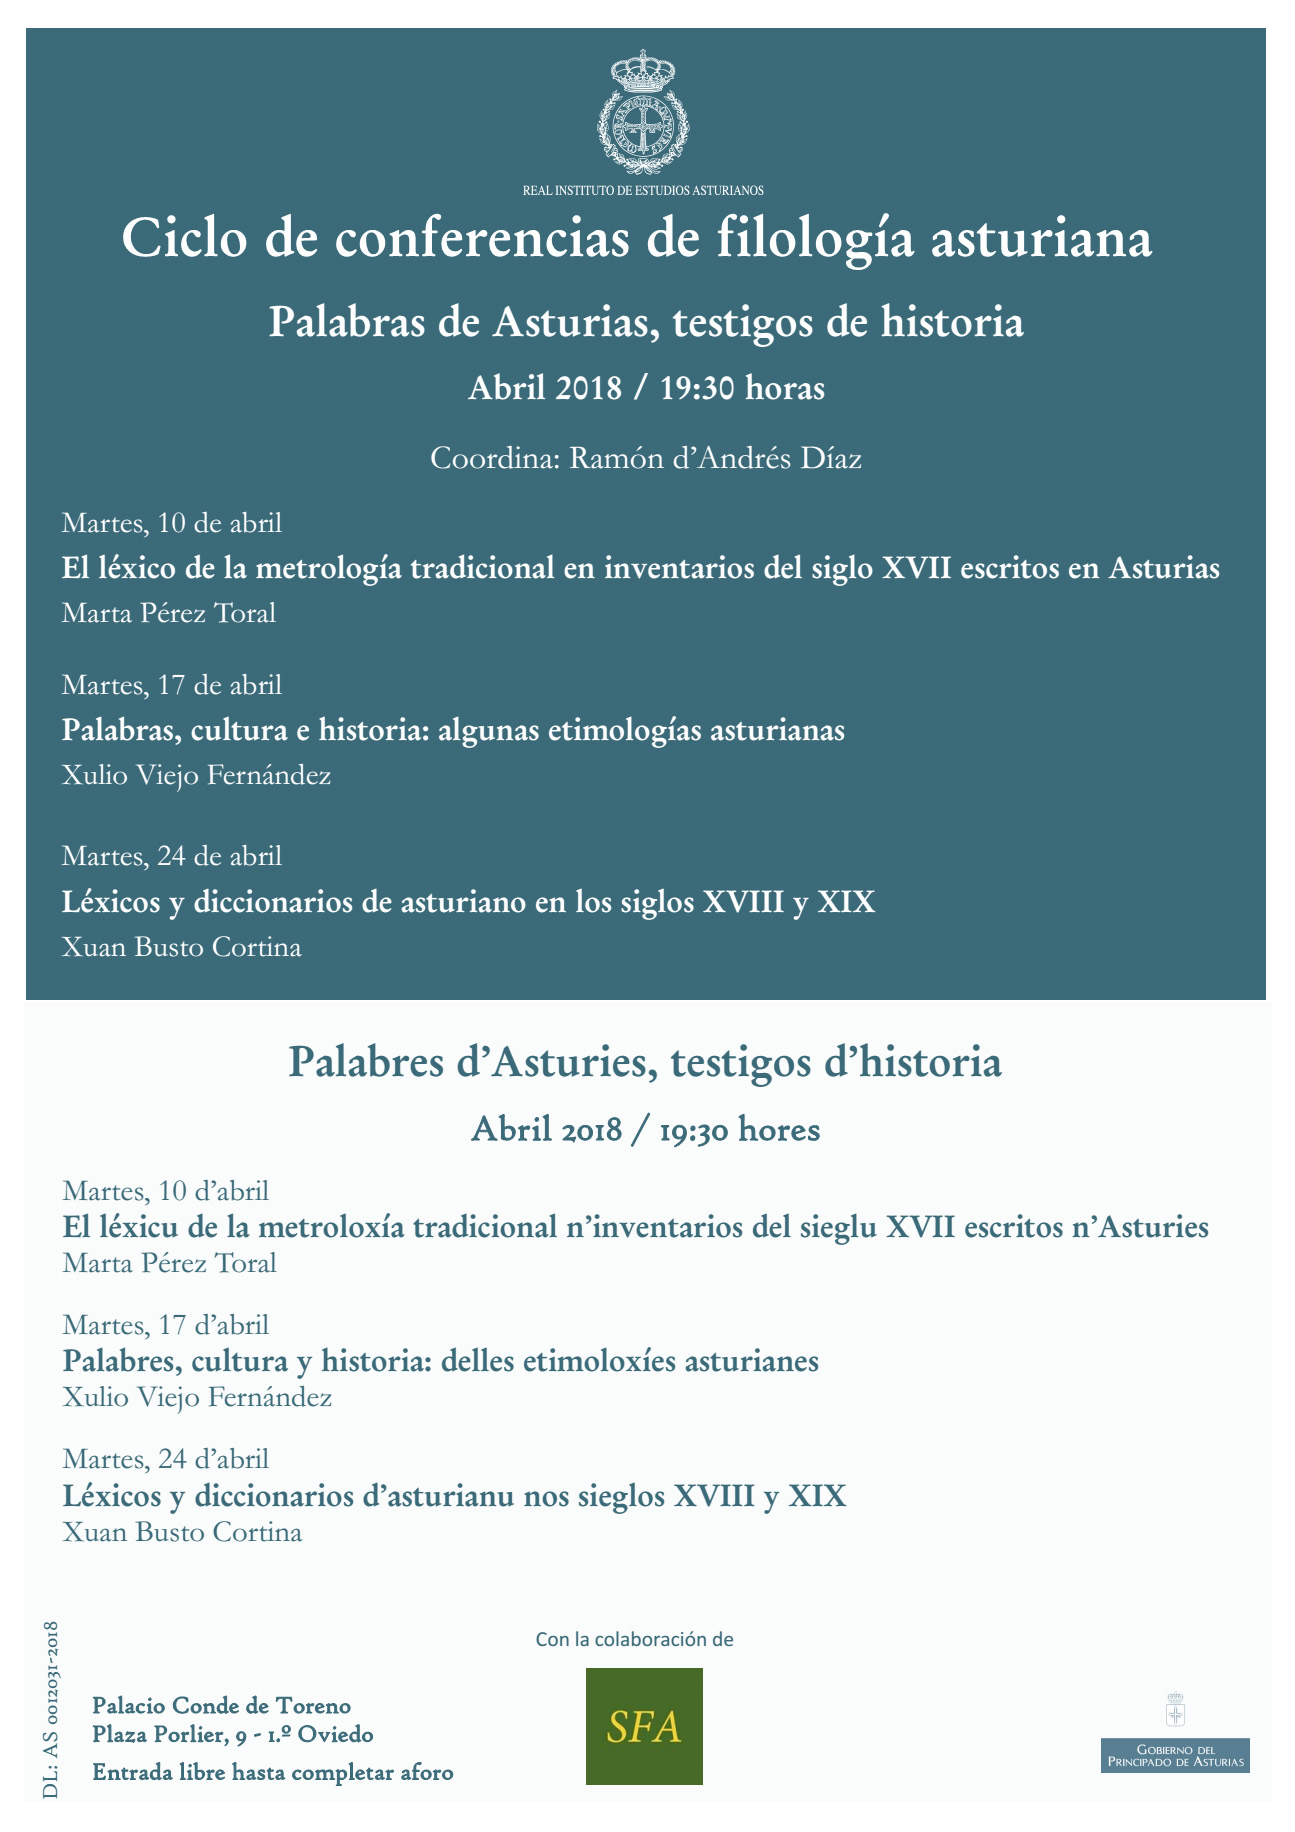 Imagen - Ciclo de conferencias de filología asturiana